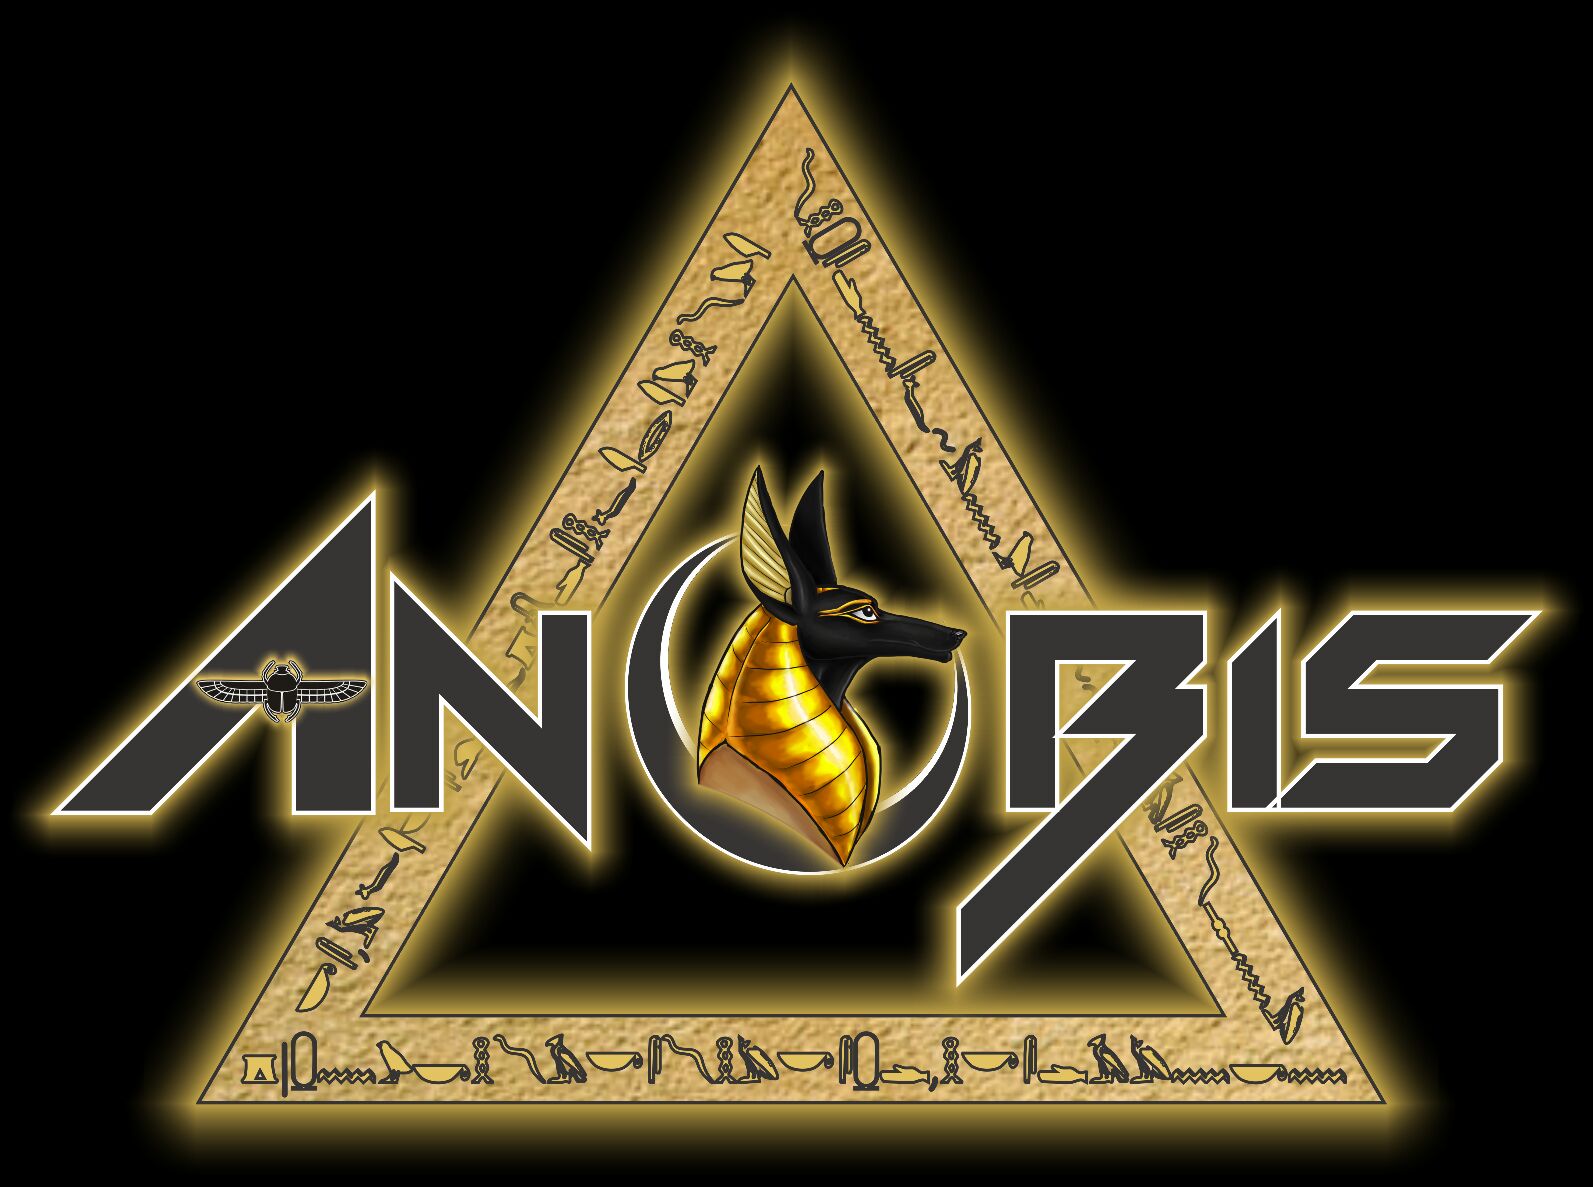 Anubis Band